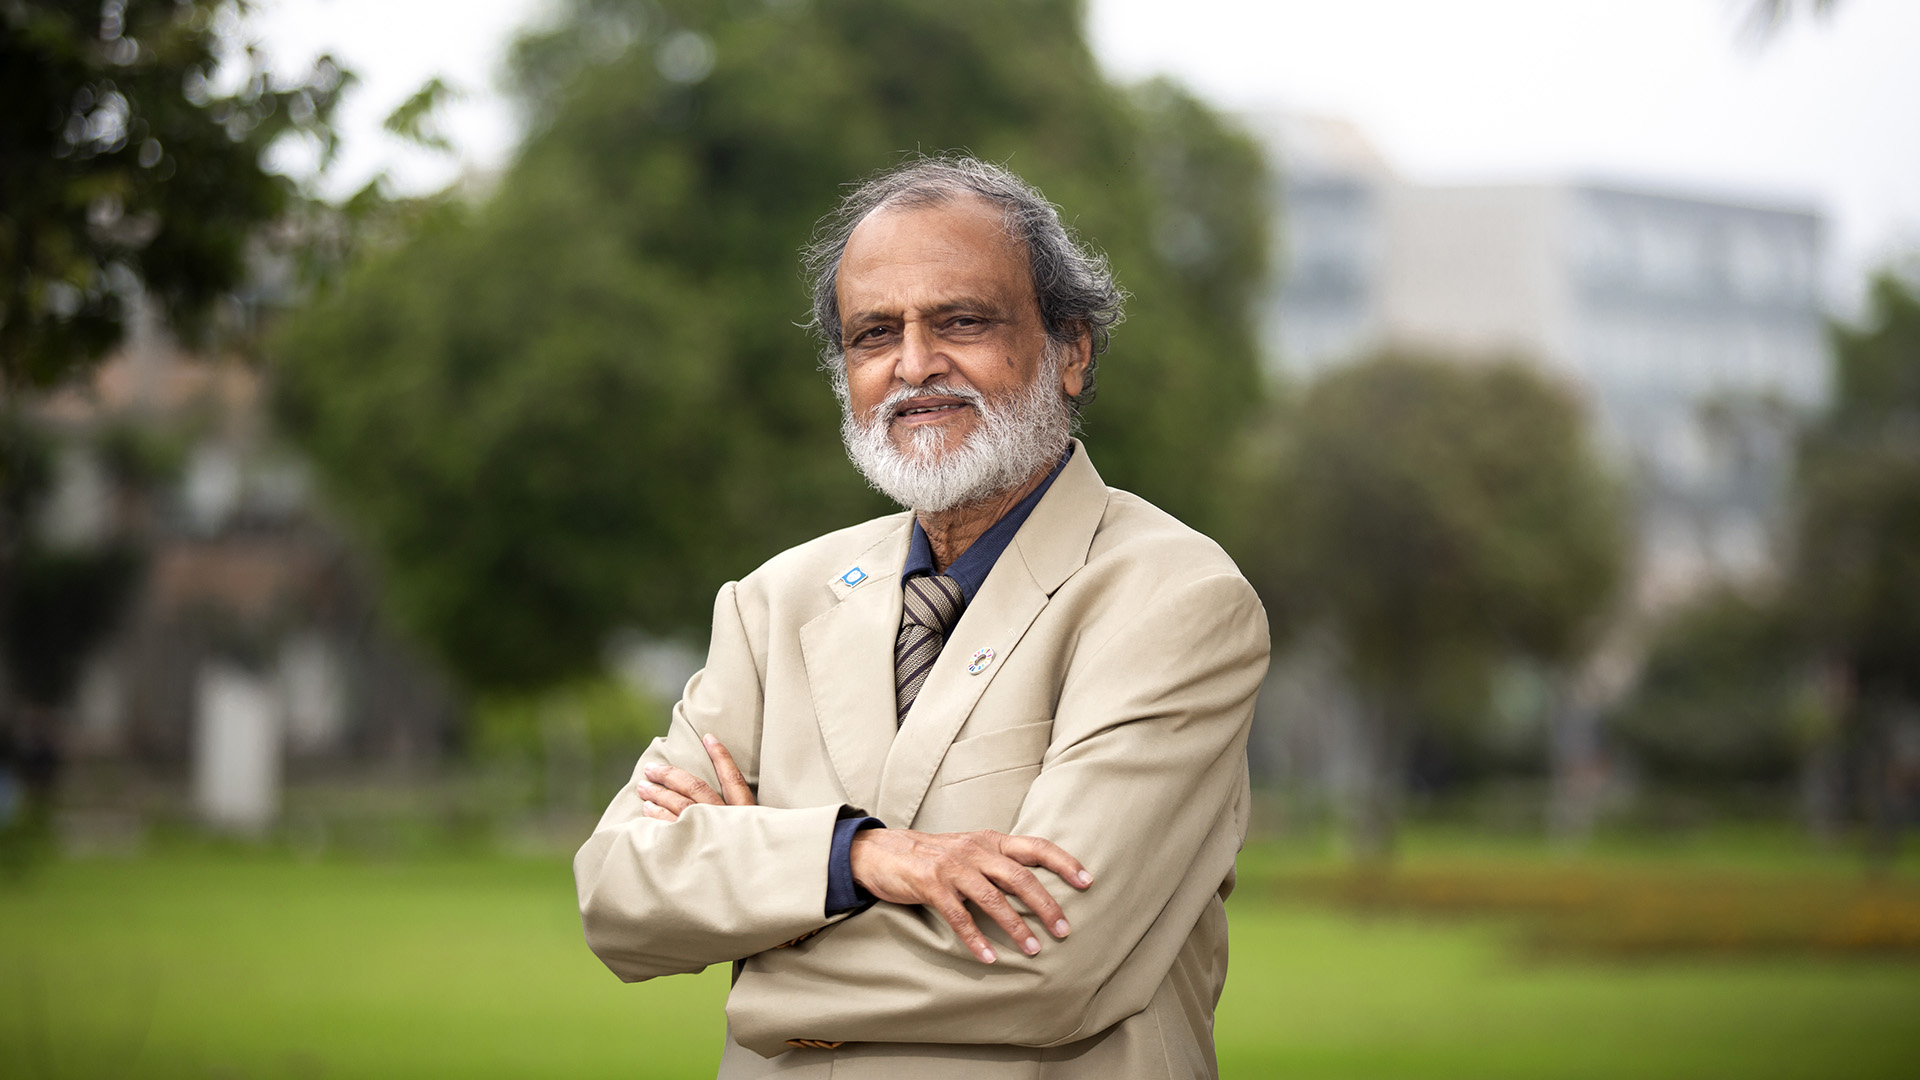 fioto de rajendra shende, especialista en cambio climático, premio Nobel de la Paz 2007 como miembro del IPCC y director de Green TERRE Foundation